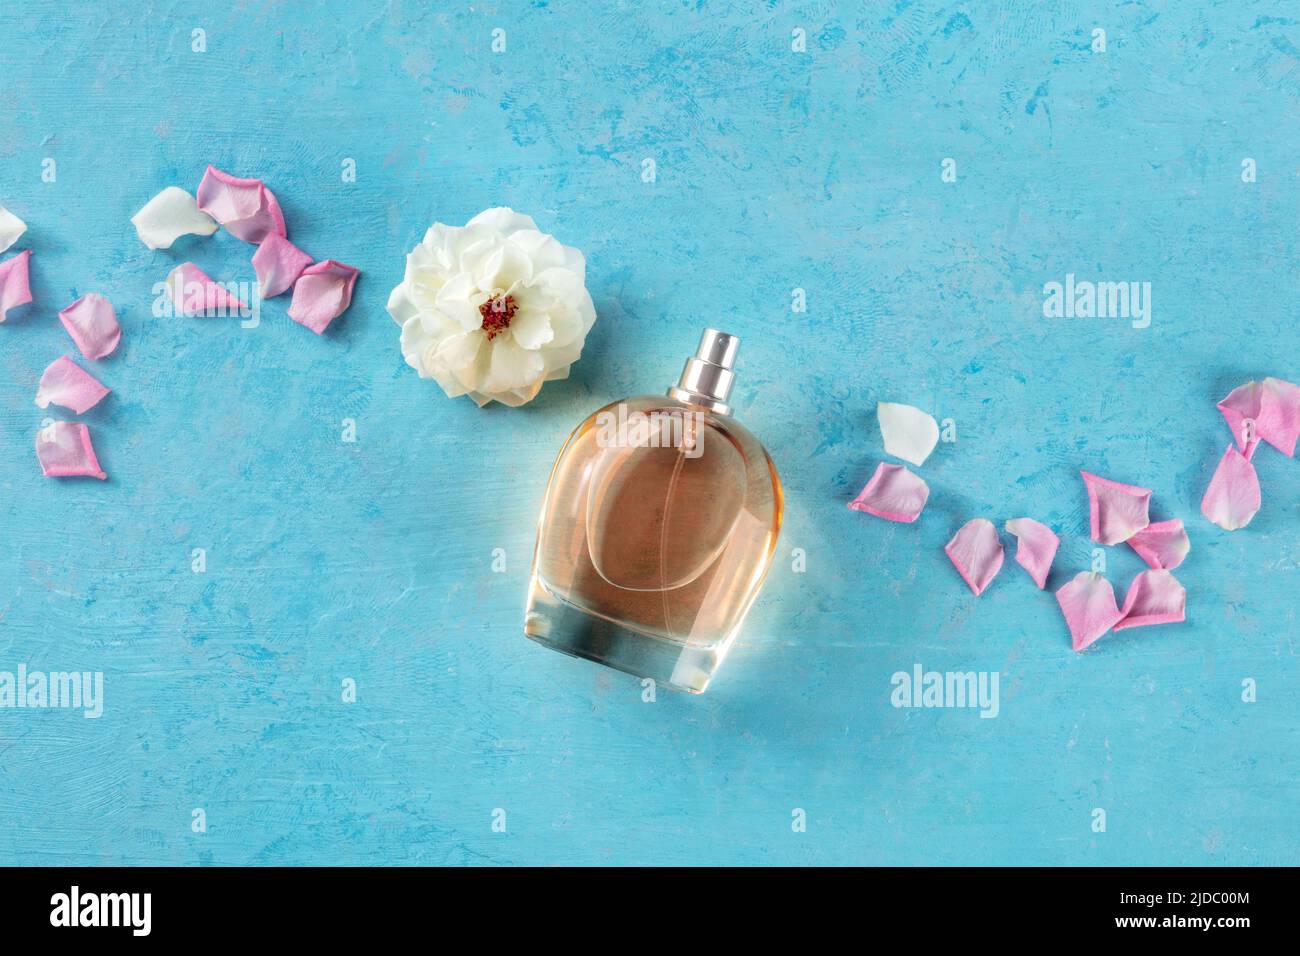 Bottiglia di fragranza rosa, un prodotto di lusso, girato dall'alto su sfondo blu con fiori freschi e petali, con un posto per il testo Foto Stock